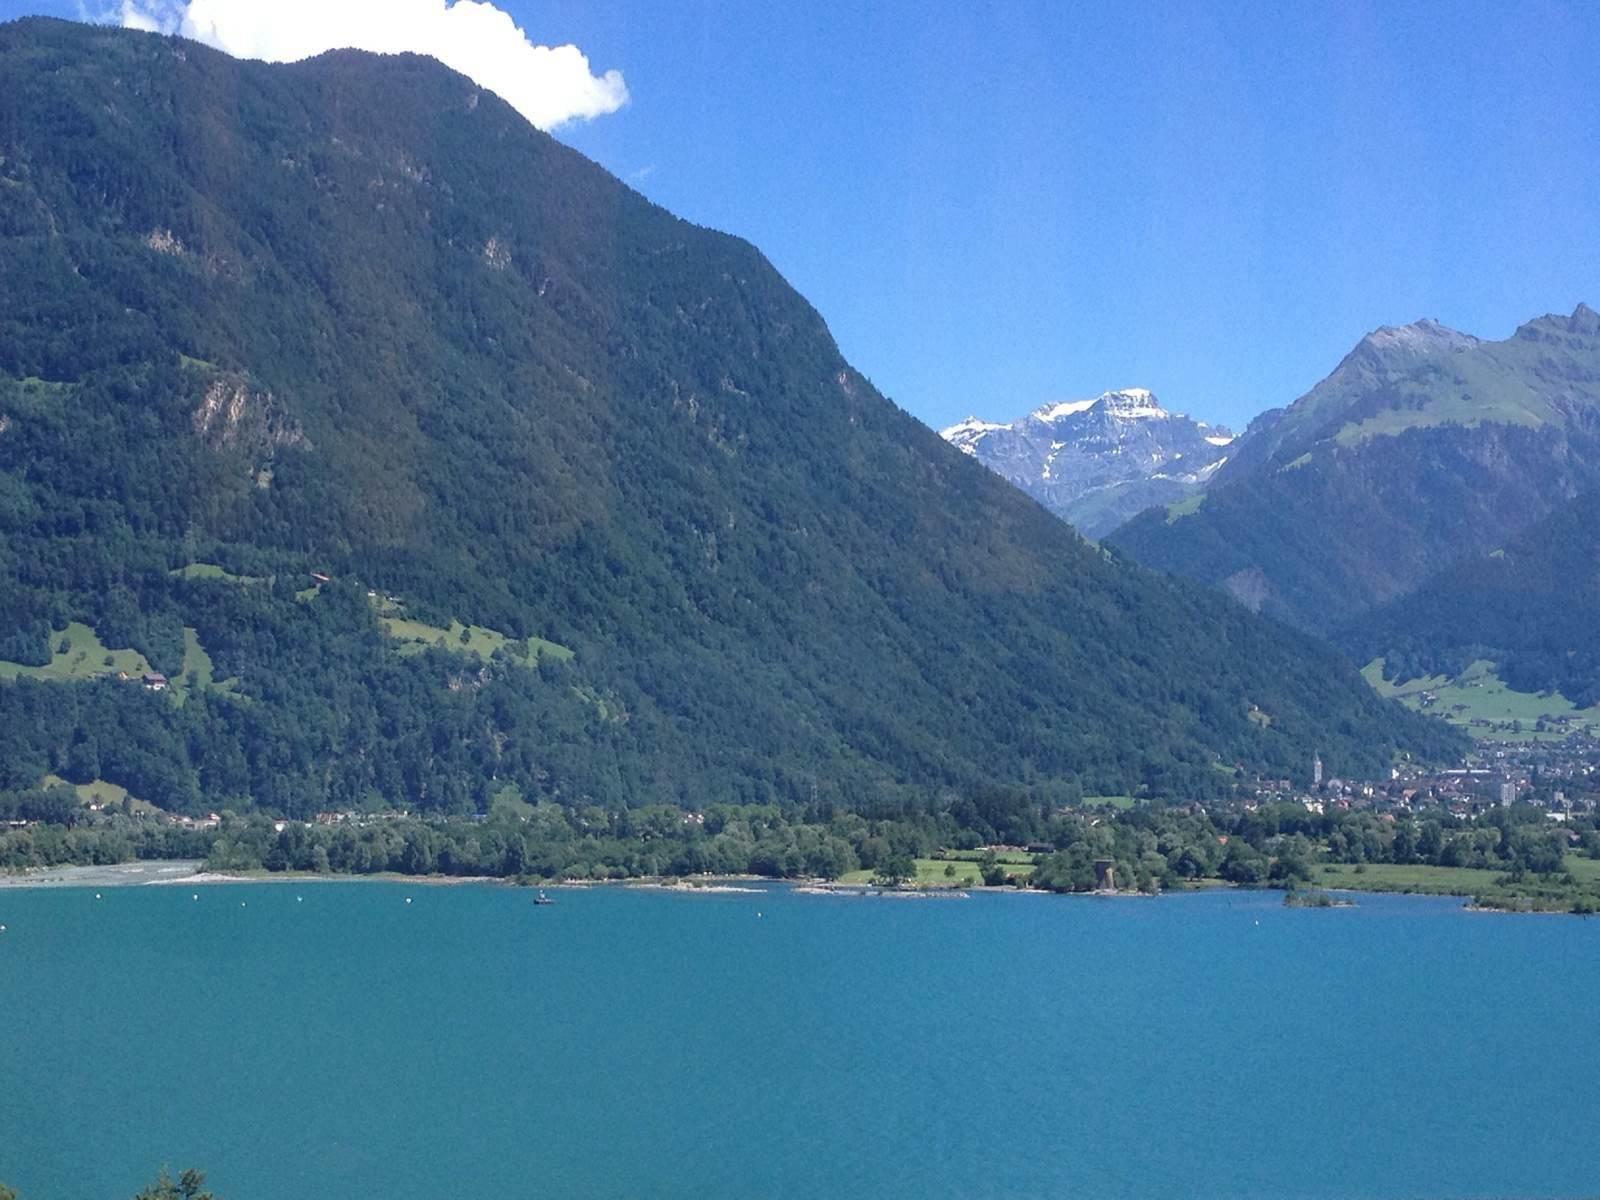 暑假去瑞士有什么好玩的地方推荐吗?